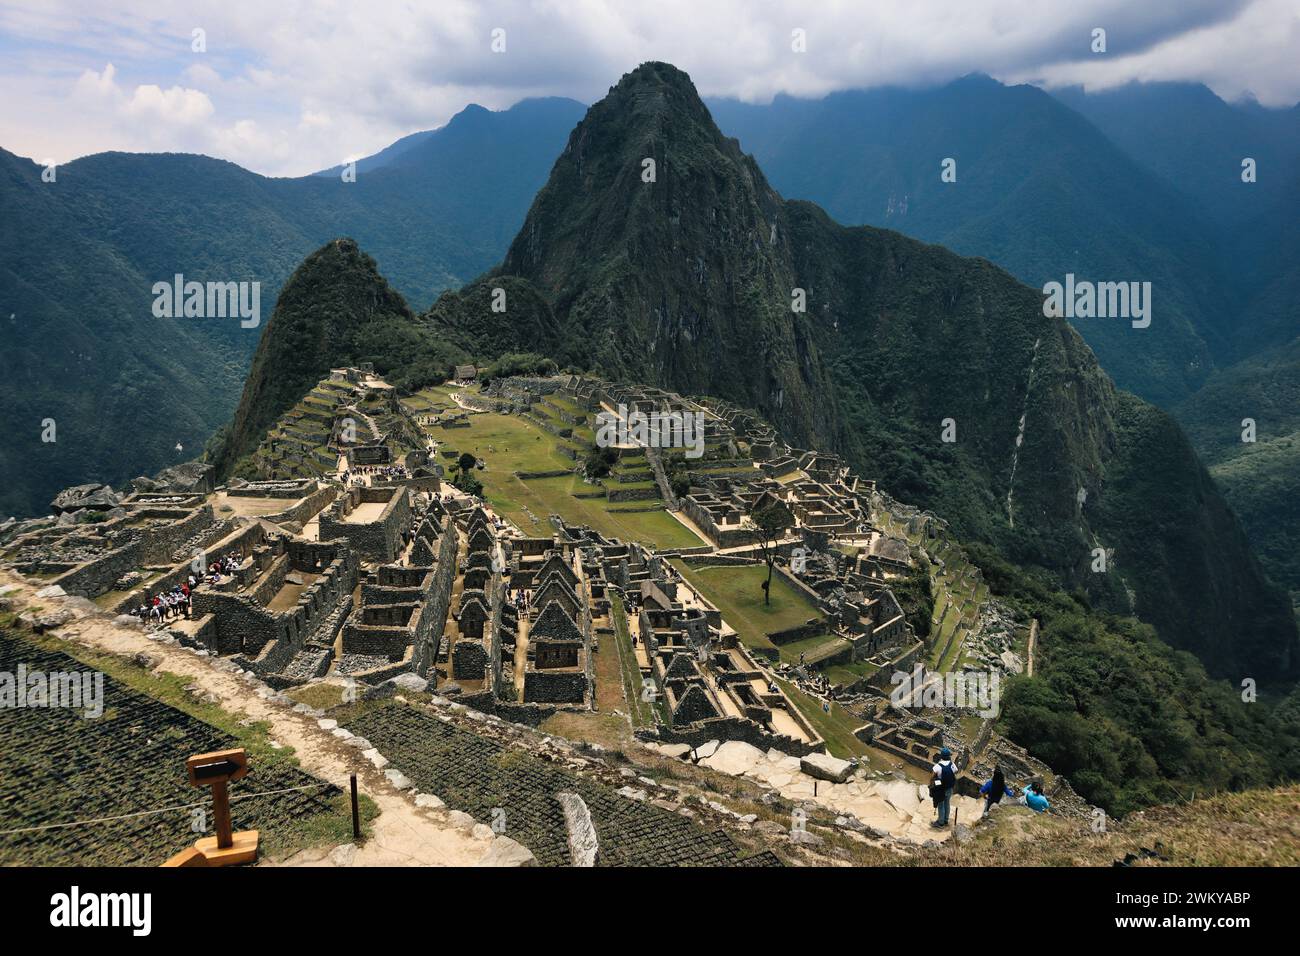 Machu Picchu, incastonata sulle Ande del Perù, è un'antica cittadella inca avvolta nella nebbia e nel mistero Foto Stock